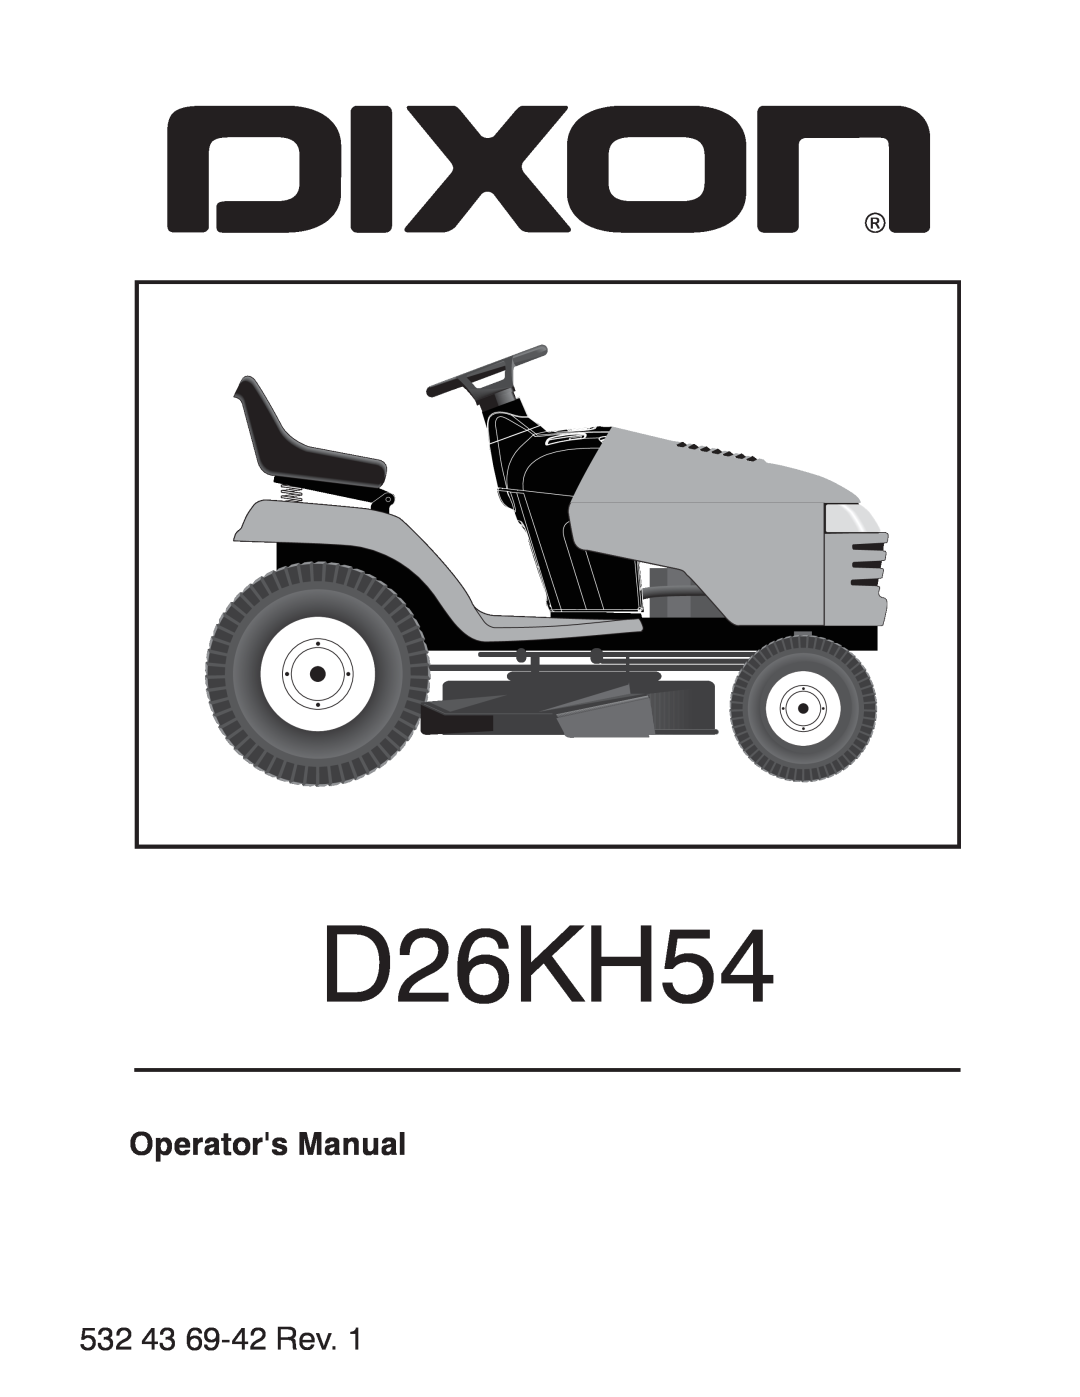 Dixon D26KH54 manual Operators Manual, 532 43 69-42 Rev 